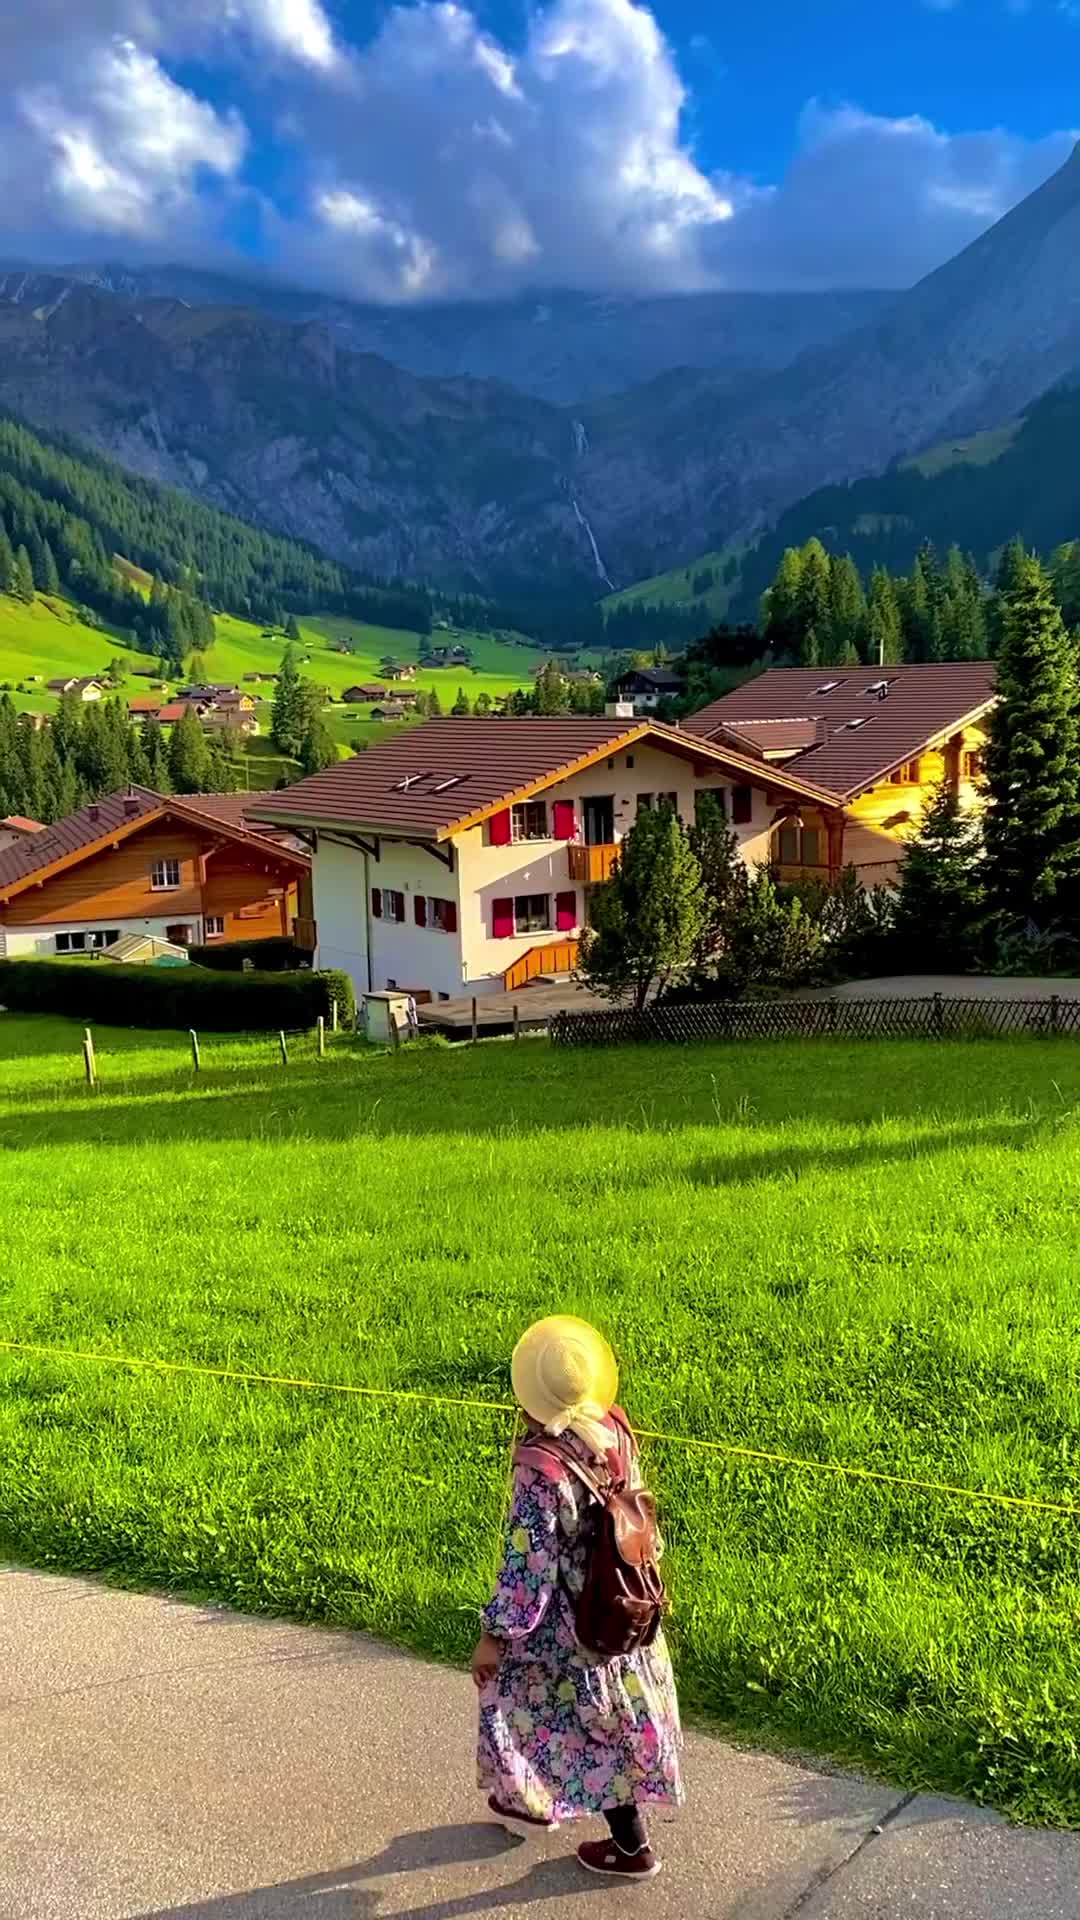 Spectacular Alpen Village in Berner Oberland, Switzerland